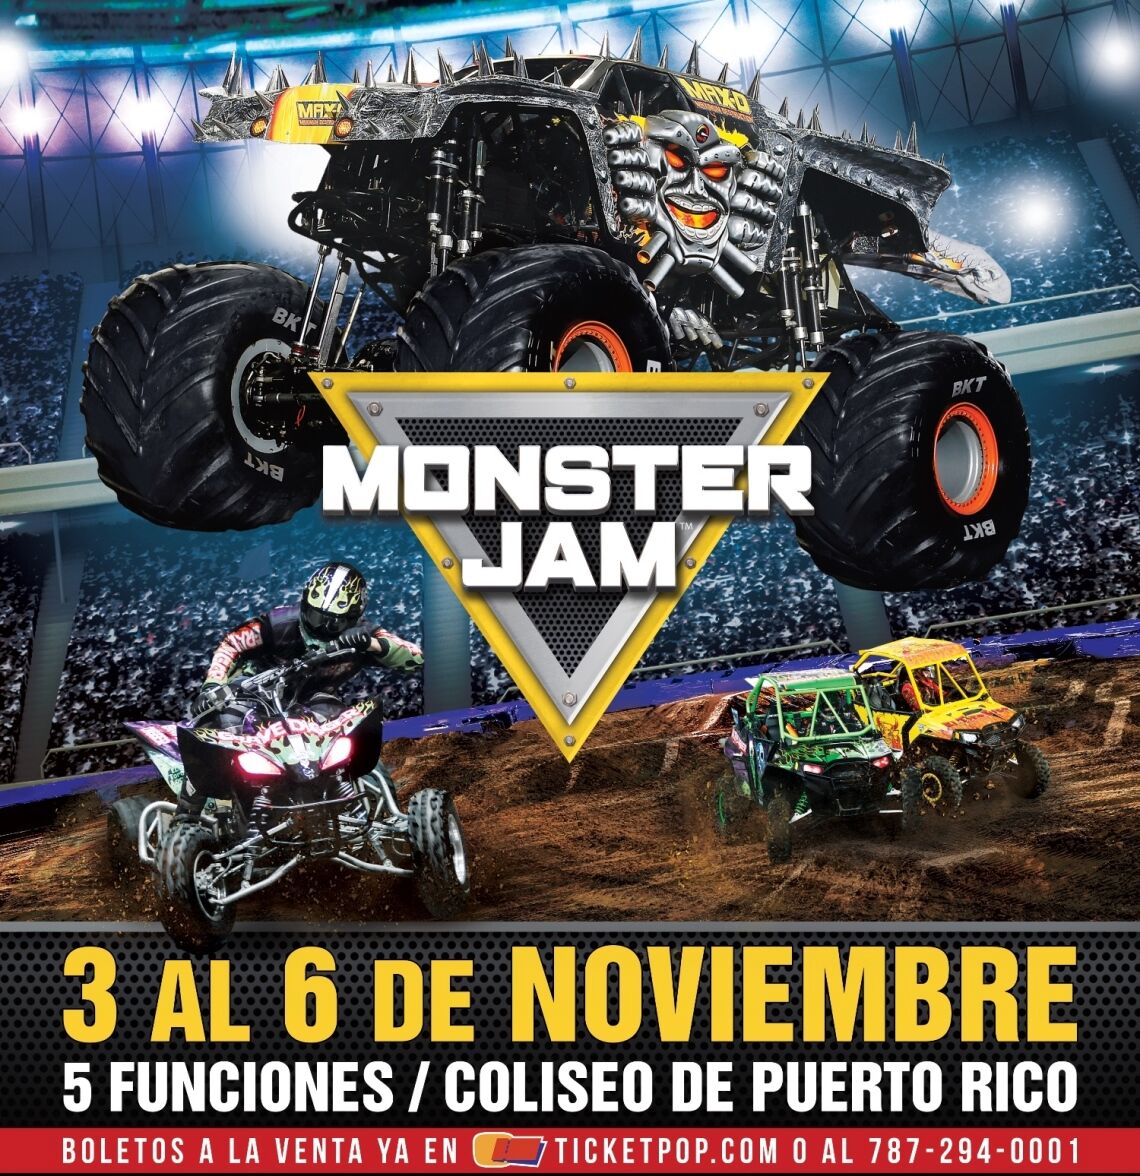 Regresa el show de Monster Jam a Puerto Rico